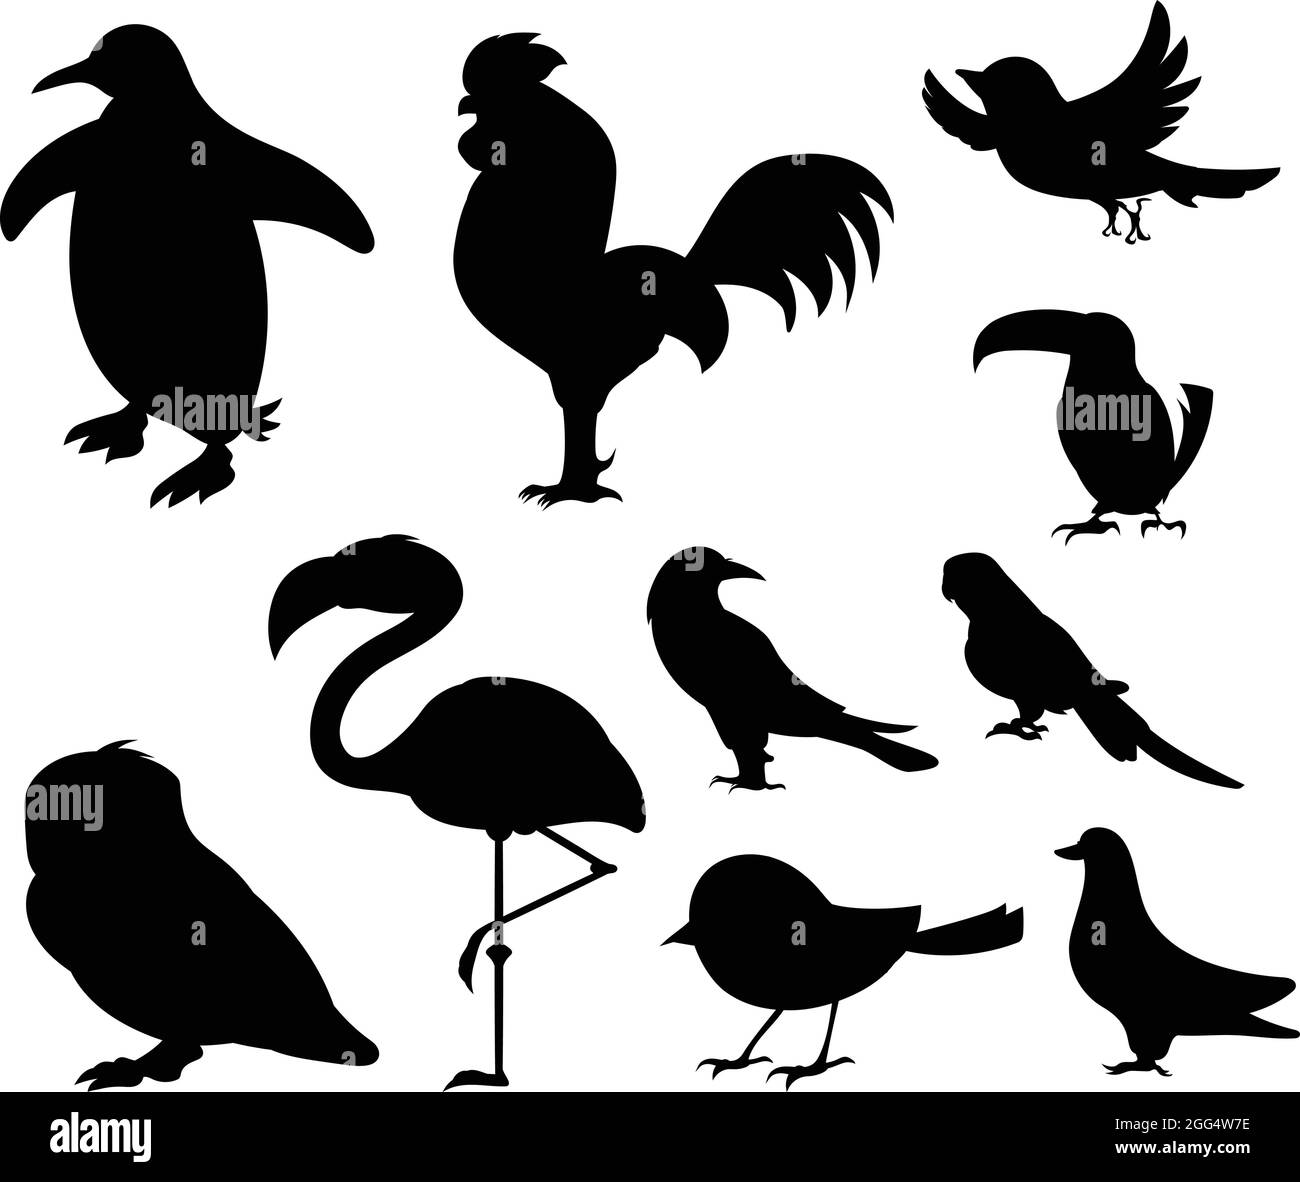 Uccelli da diverse parti del mondo. Uccelli comuni. Pollo al pinguino Sparrow Dodo uccello Pigeon Duck Swan Owl Crow. Silhouette di uccello nero contro Ba bianco Illustrazione Vettoriale